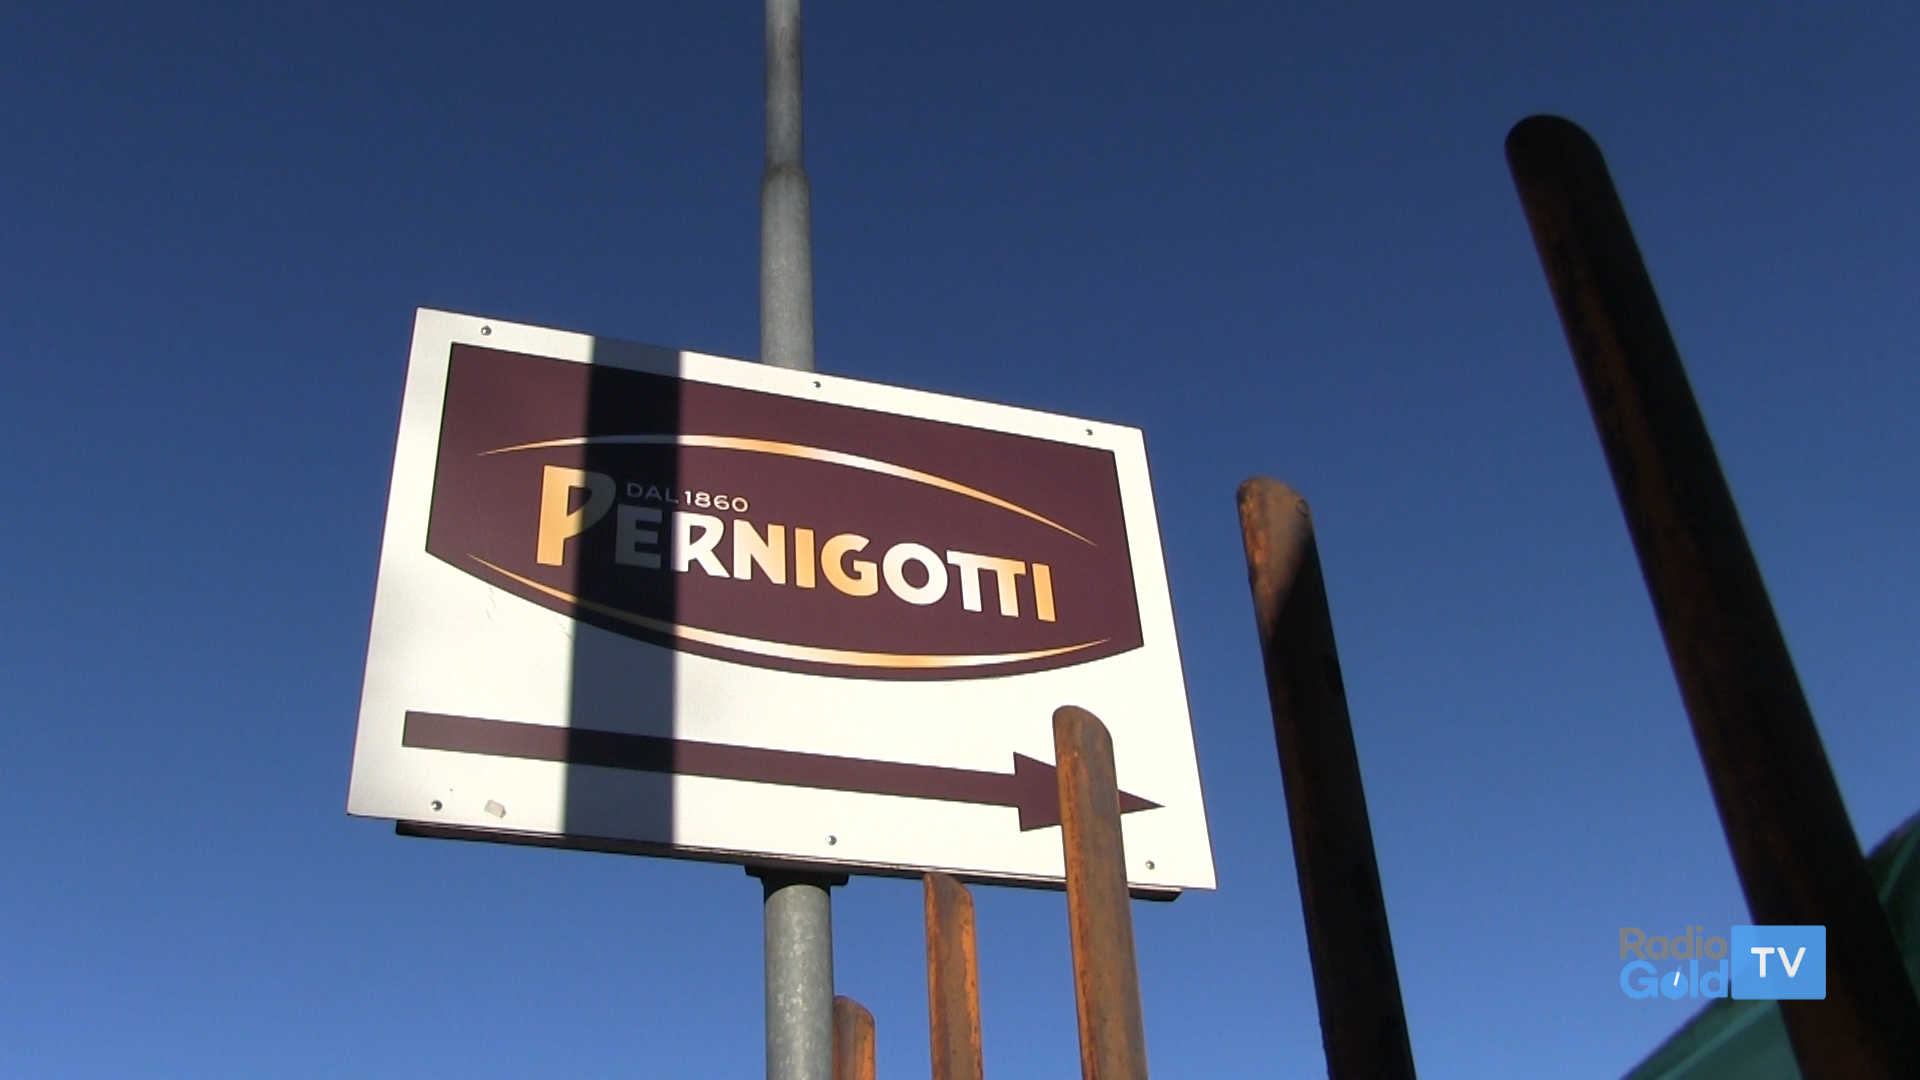 La Witor’s fa un’offerta per acquistare marchio e stabilimento della Pernigotti